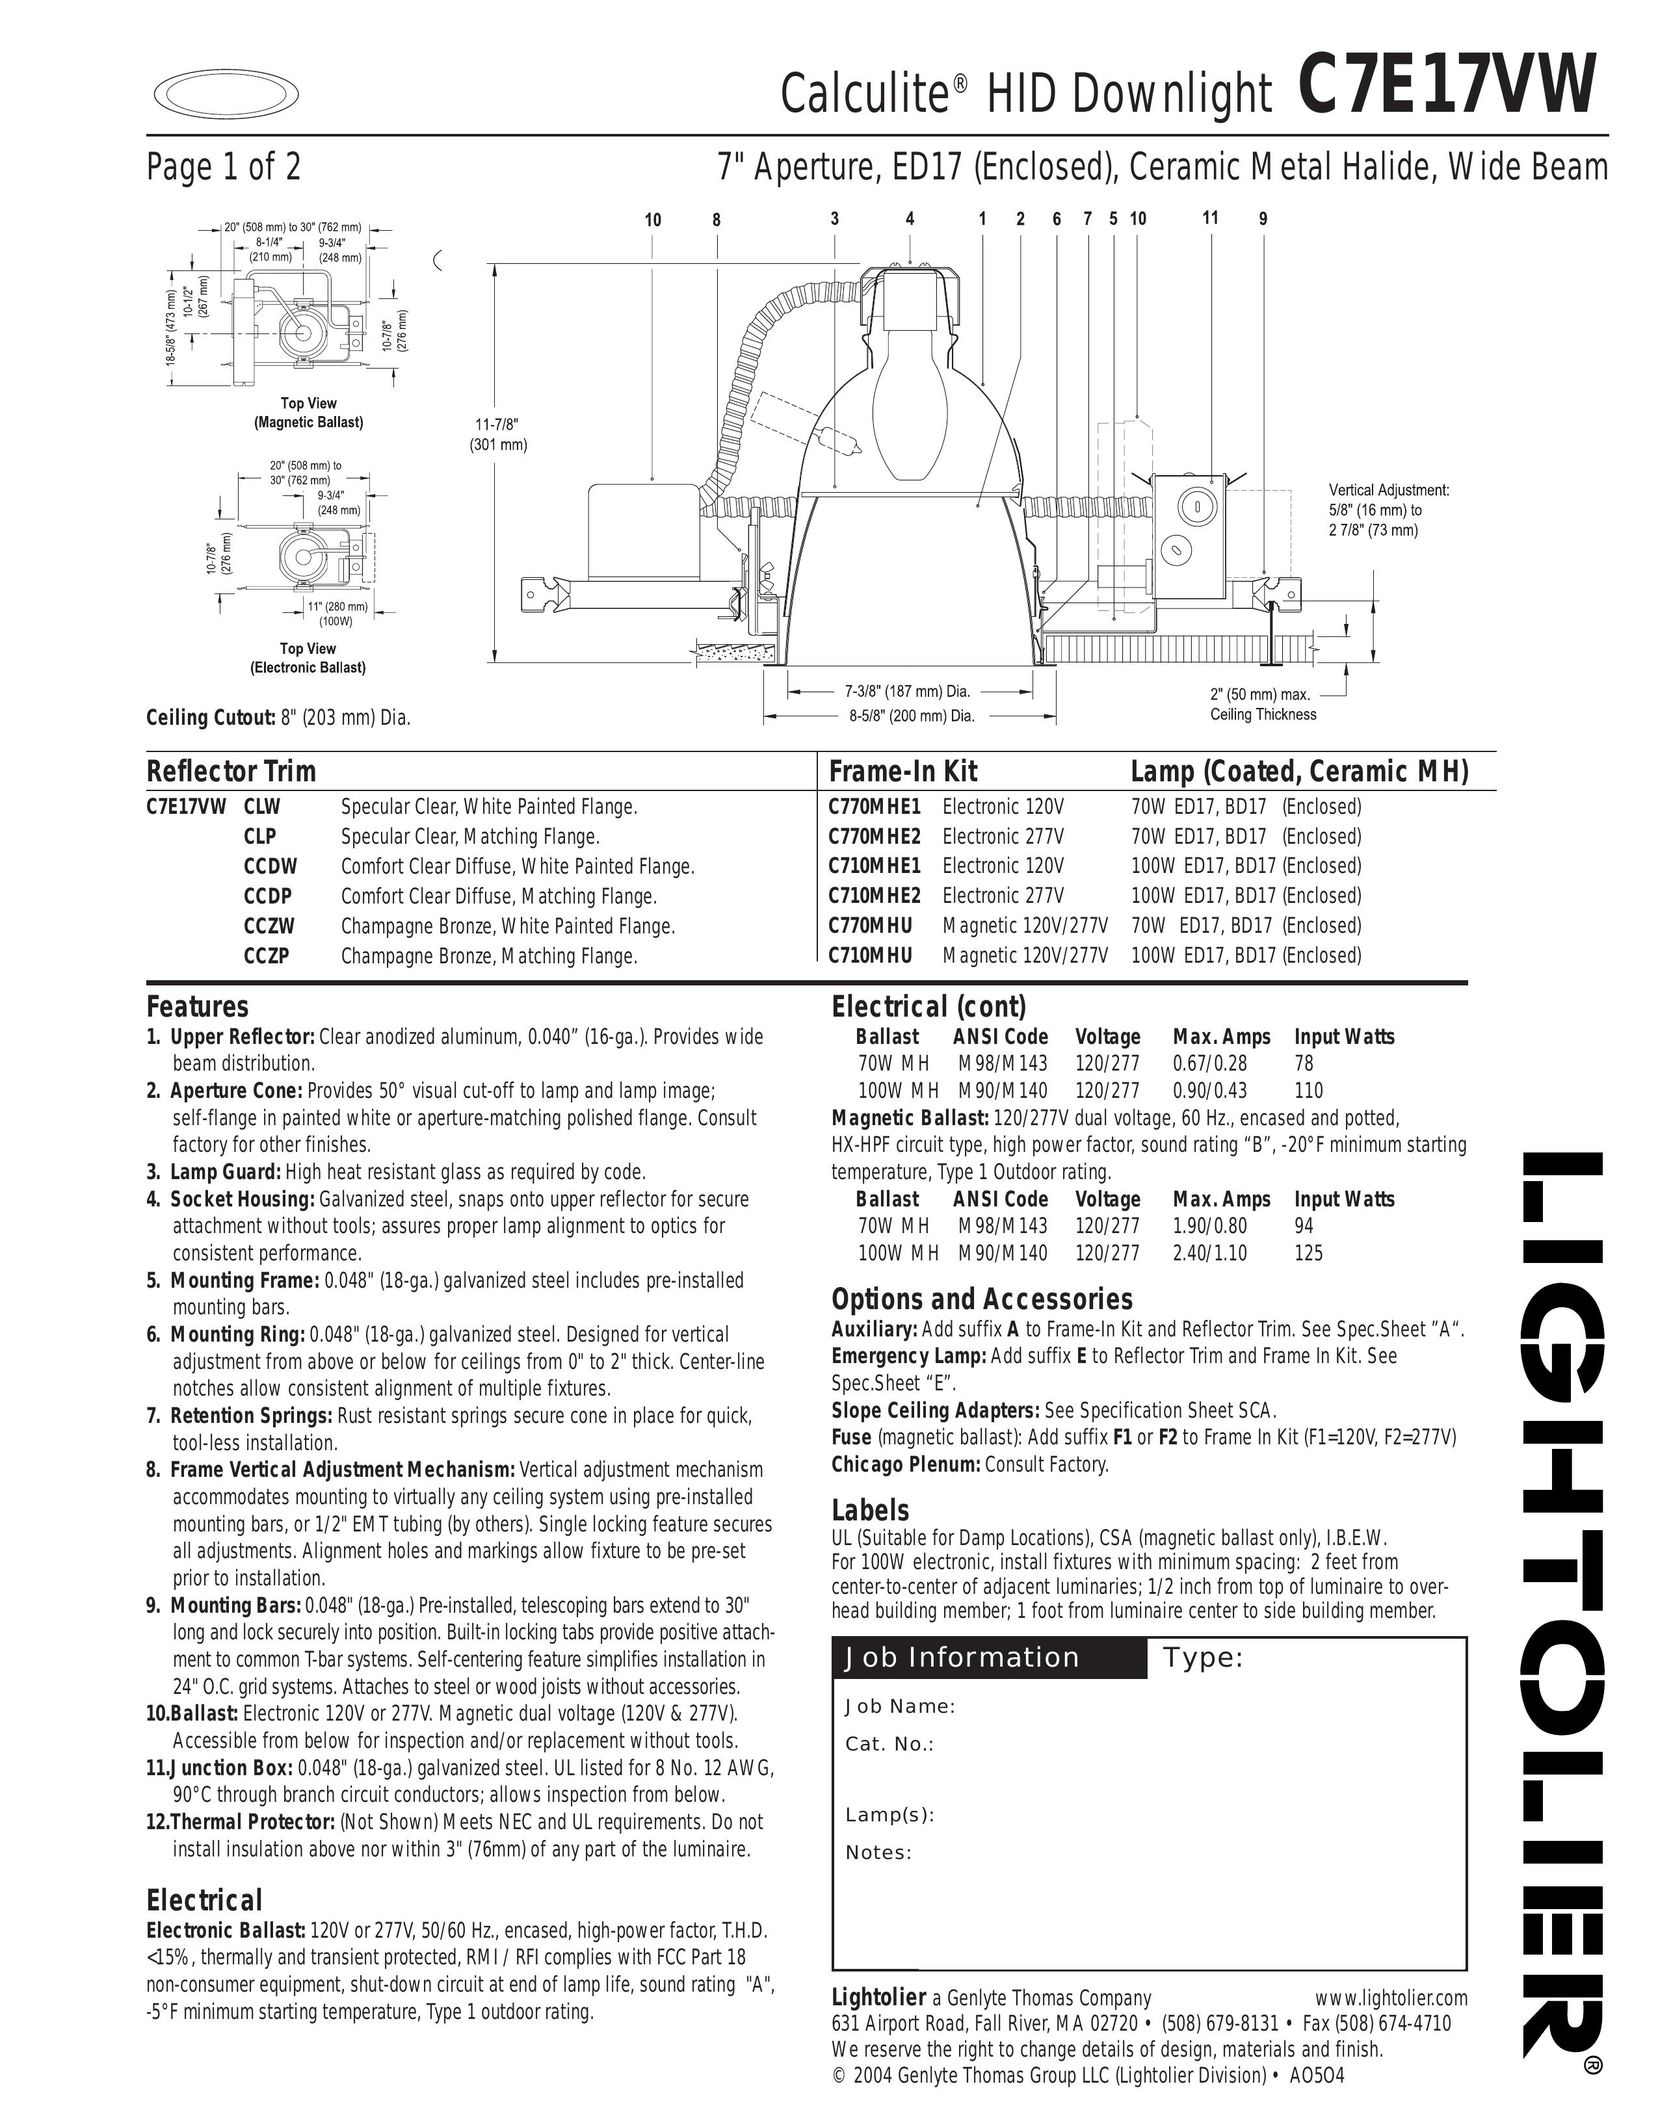 Lightolier C7E17VW Work Light User Manual